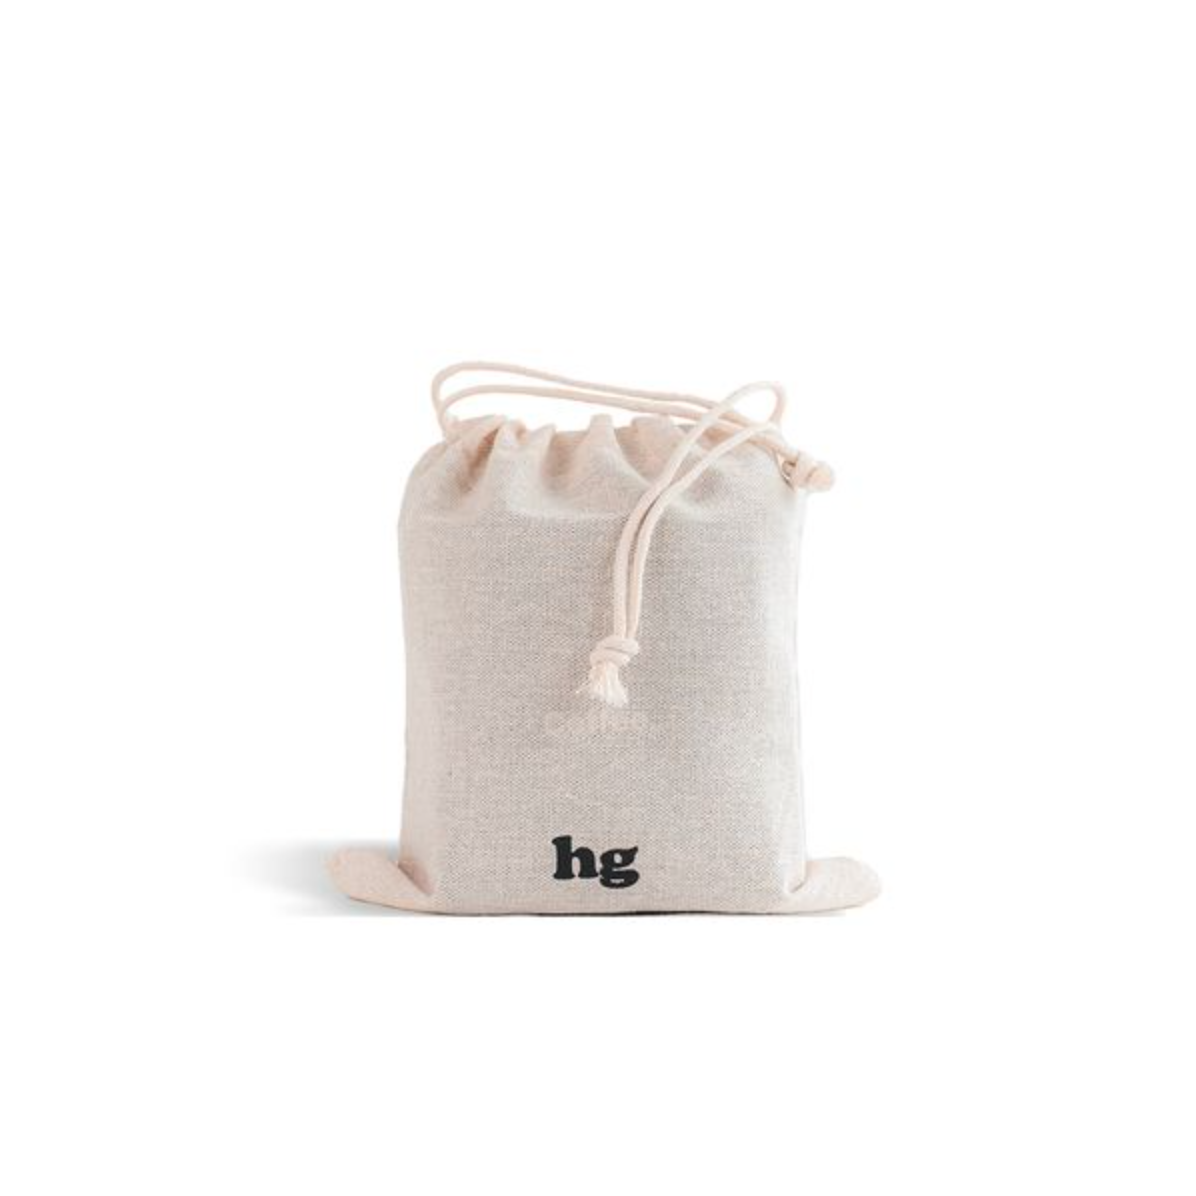 HG Drawstring bag - small